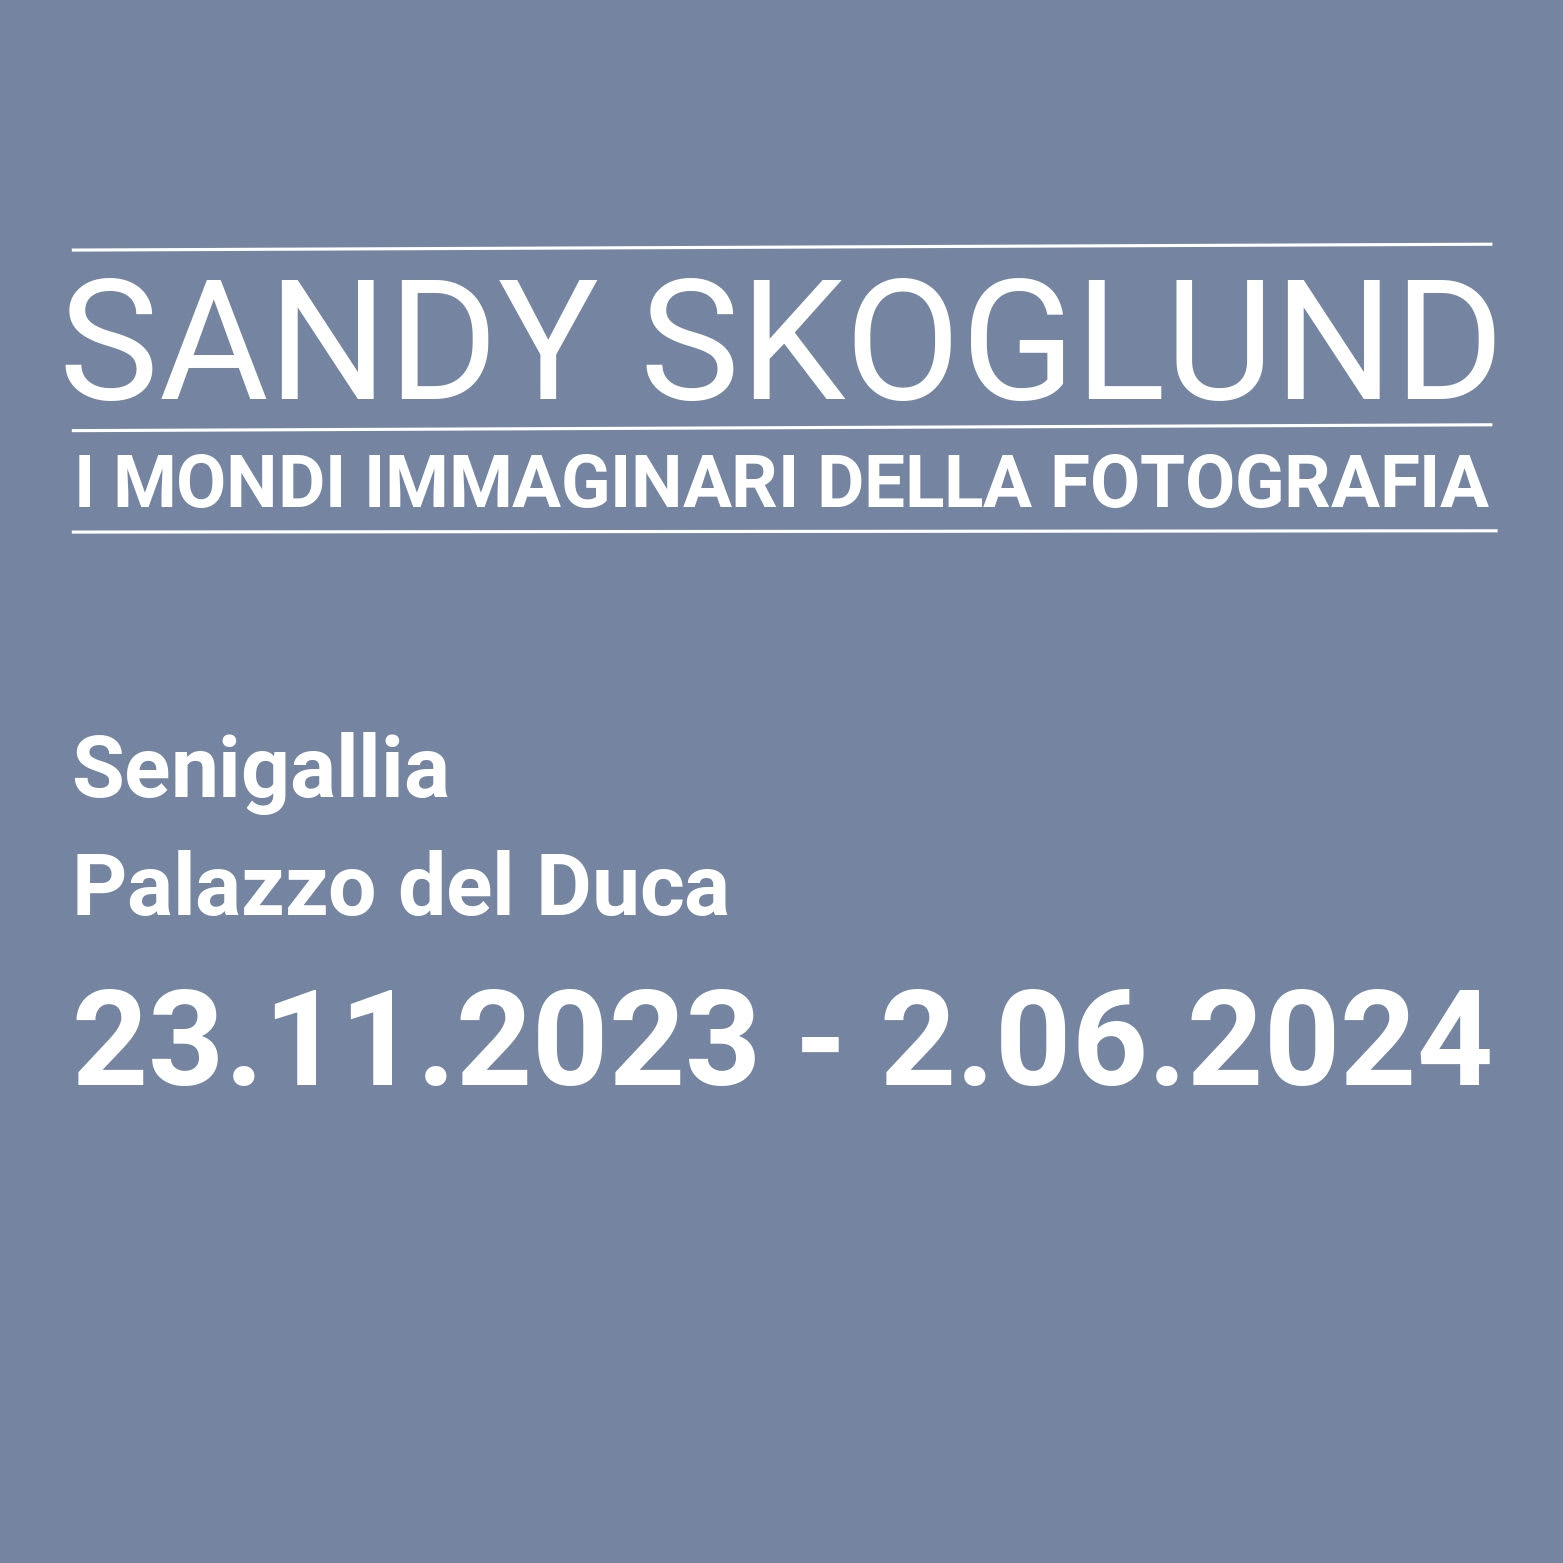 Sandy Skoglund. I mondi immaginari della fotografia. 1974 - 2023 - Palazzo del Duca, fino al 2 giugno